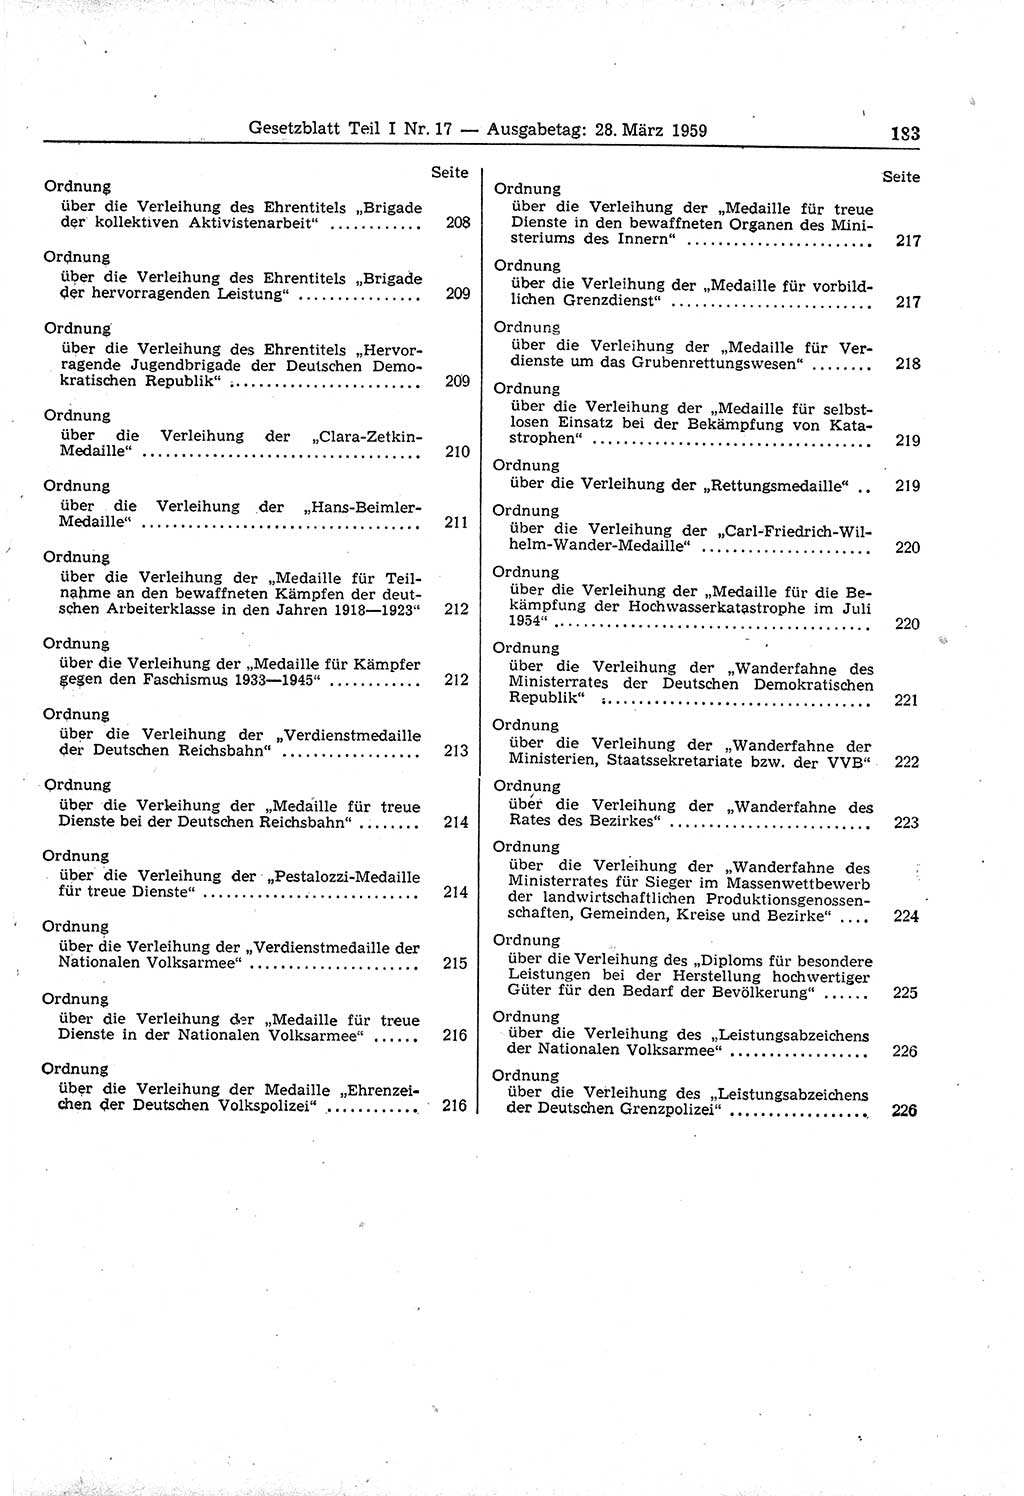 Gesetzblatt (GBl.) der Deutschen Demokratischen Republik (DDR) Teil Ⅰ 1959, Seite 183 (GBl. DDR Ⅰ 1959, S. 183)